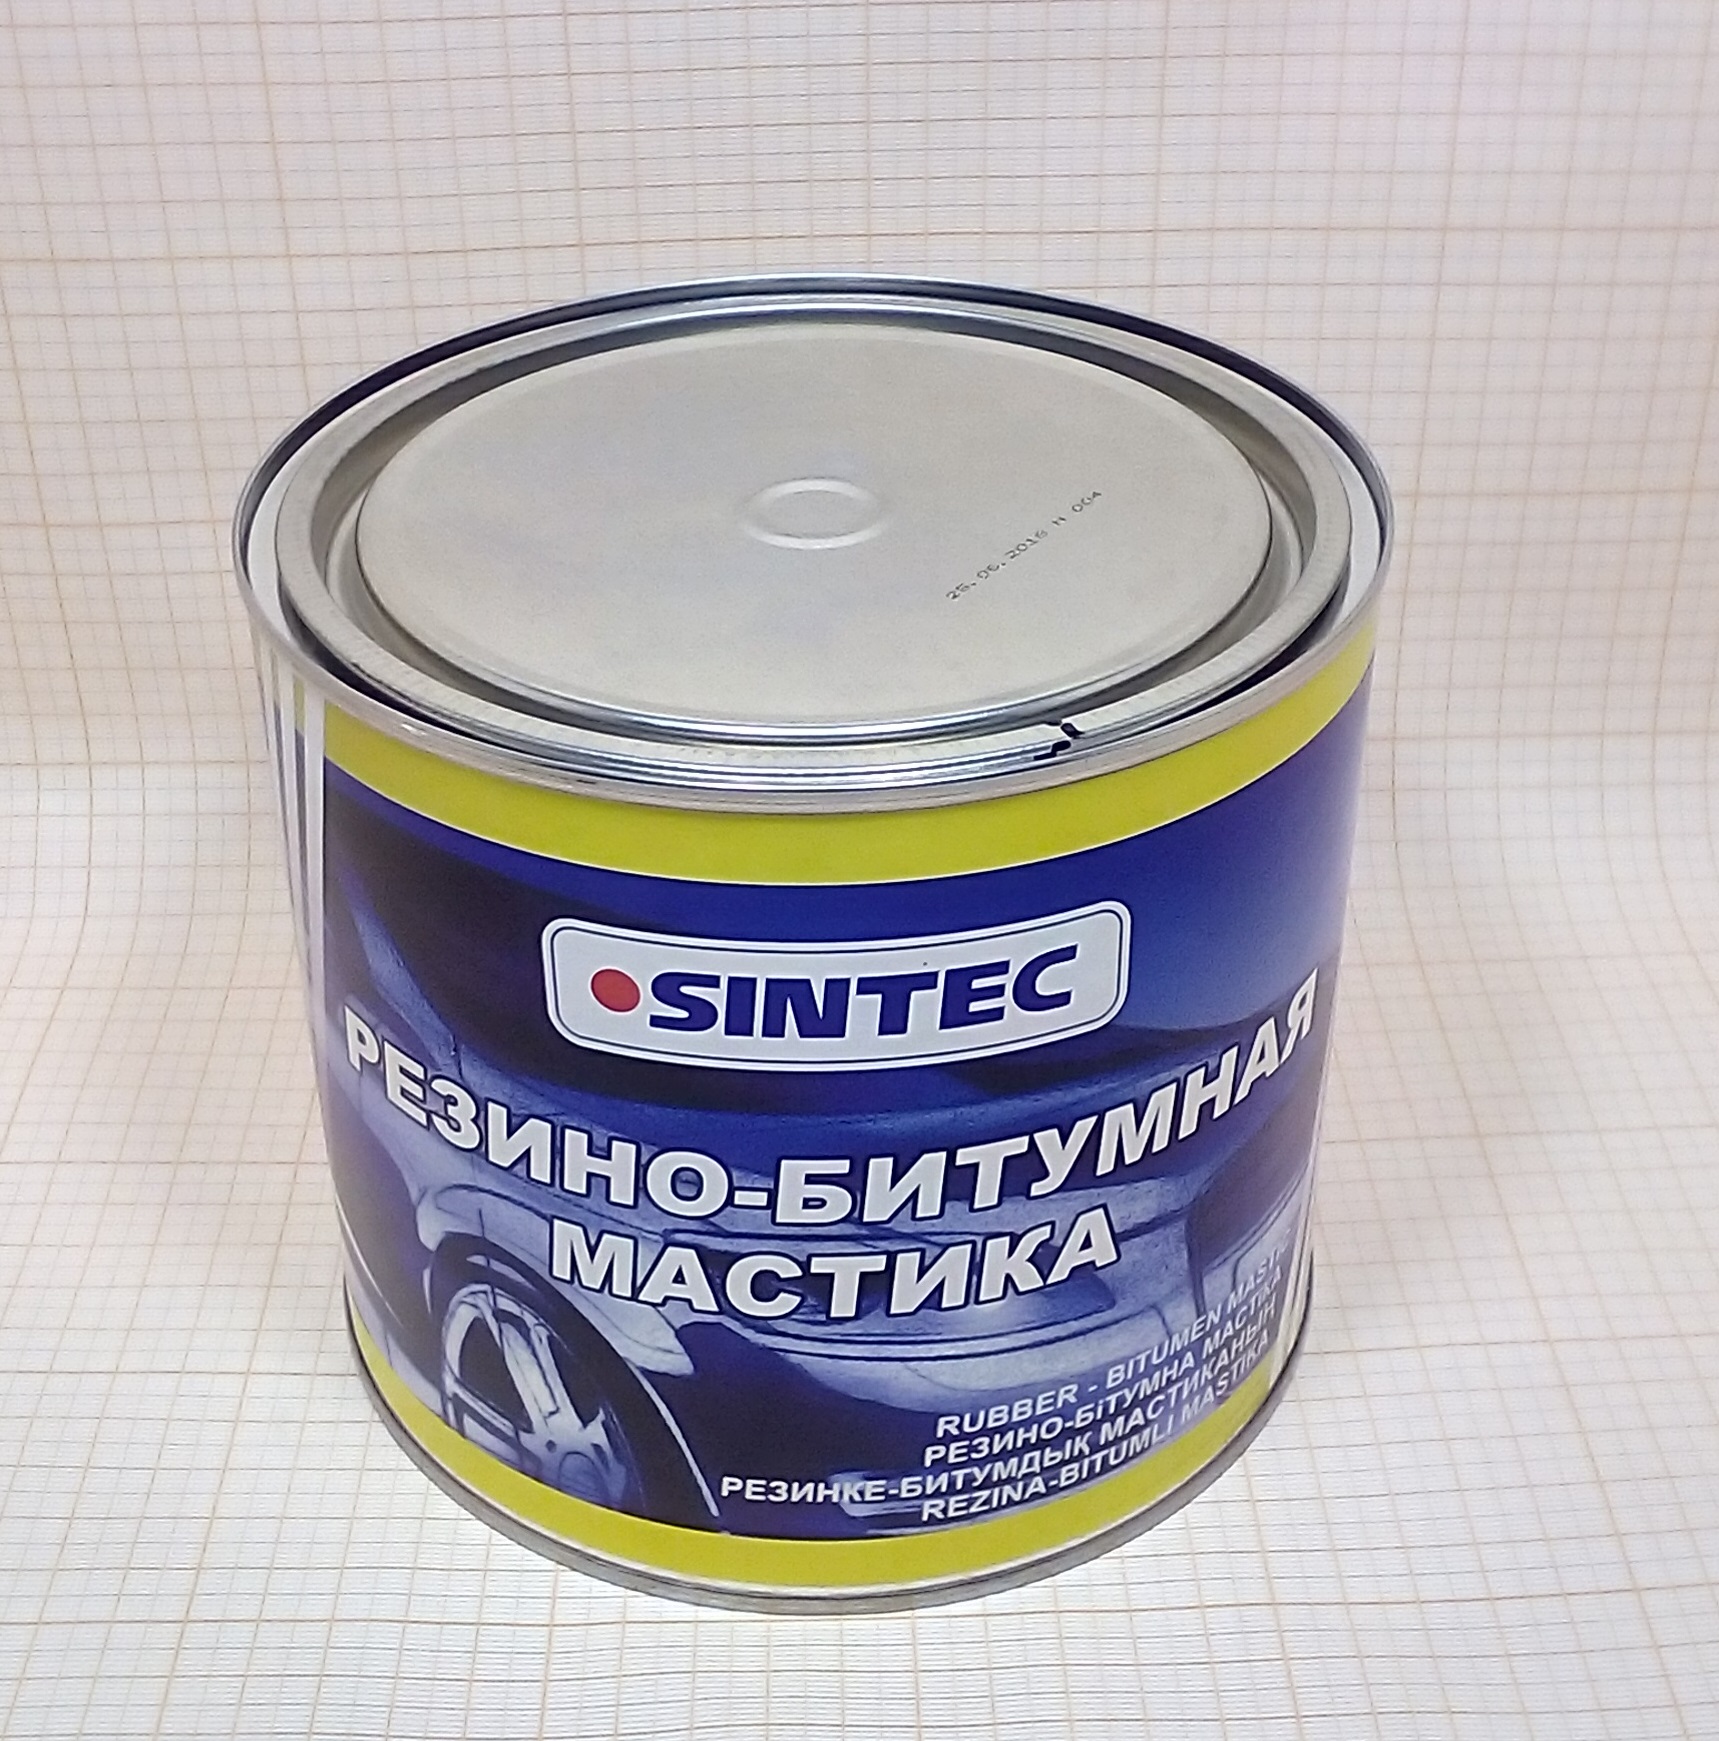 Мастика 2.0 кг(Sintec) резино-битумная Россия